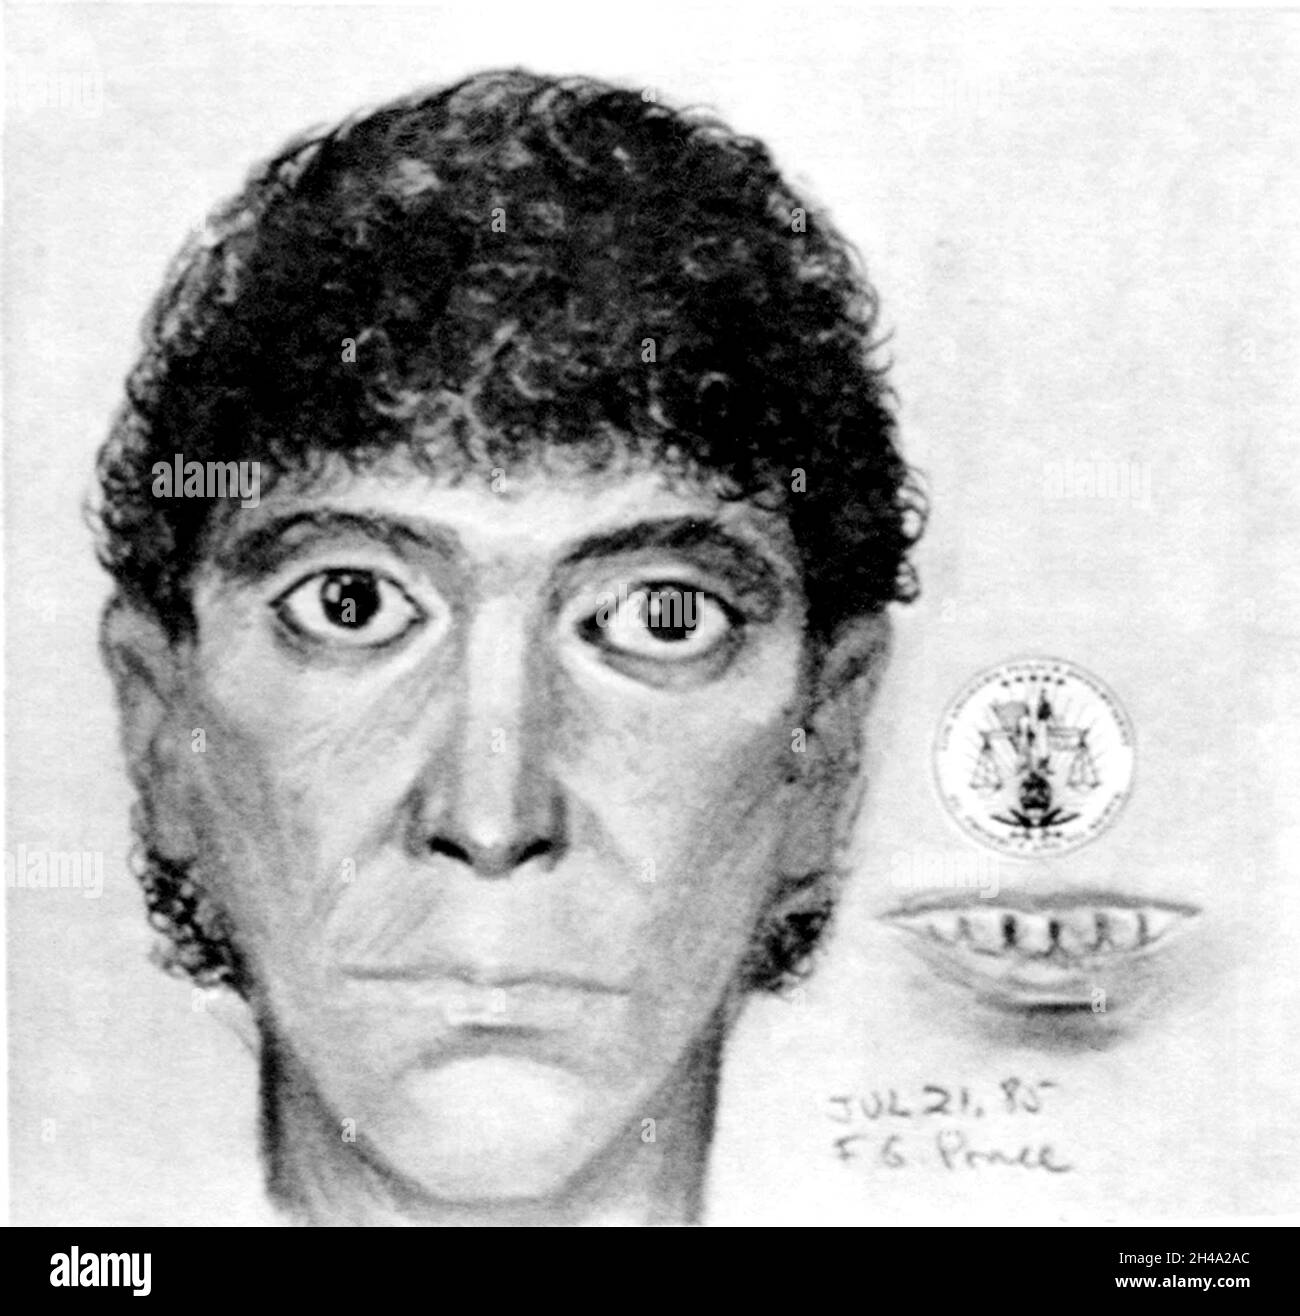 1985 , LOS ANGELES , USA : il serial killer satanista RICHARD RAMIREZ ( 1960 - 2013 ), nato Ricardo Leyva Munoz Ramírez , l'impronta dell'artista forense da parte del Los Angeles Police Department , che si concentra sui suoi 'occhi gonfiati' e marcio, bocca puzzante . Ramirez ' The Night Stalker ' era anche stupratore seriale , rapinatore , molestatore bambino e burglar , era un killer americano che uccise almeno 13 persone , dal 17 marzo al 31 agosto 1985 . Fotografo sconosciuto .- SERIAL KILLER - ritratto - ritratto - serial-killer - assassino seriale - CRONACA nera - criminale - criminale - SERIAL KILLE Foto Stock